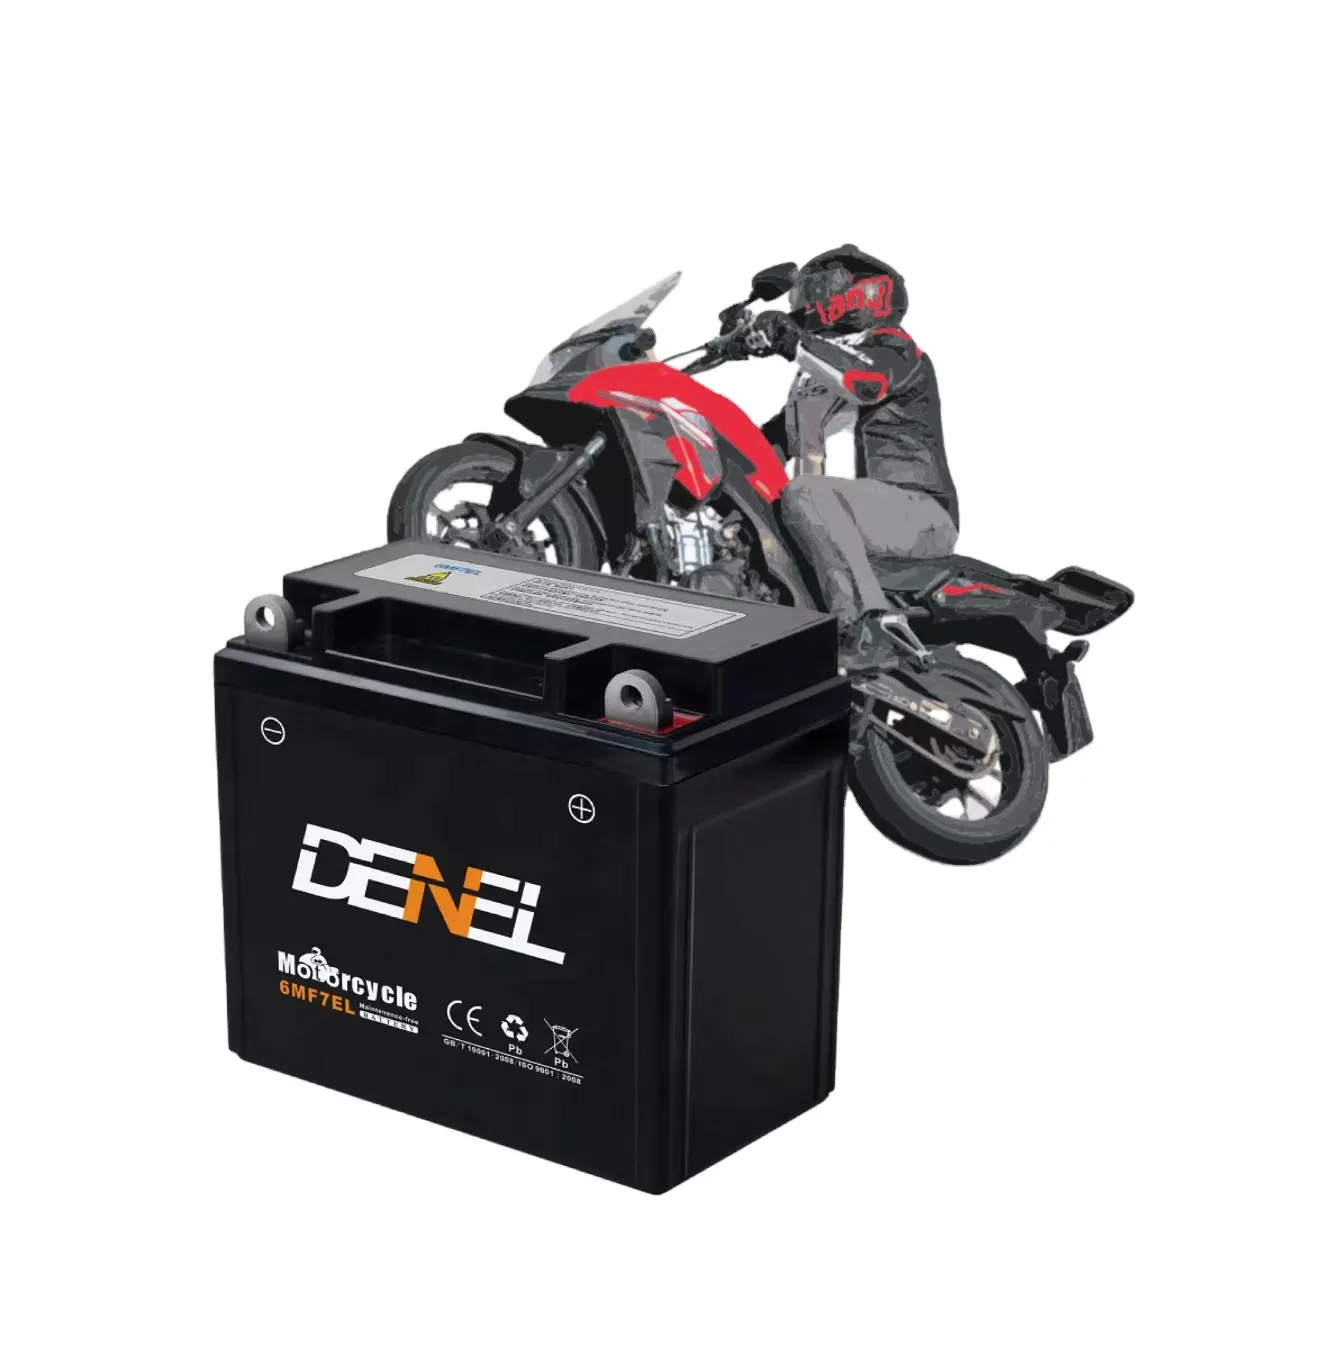 Bateria de chumbo-ácido em denel 12v 7ah, bateria para iniciante de carro e motocicleta